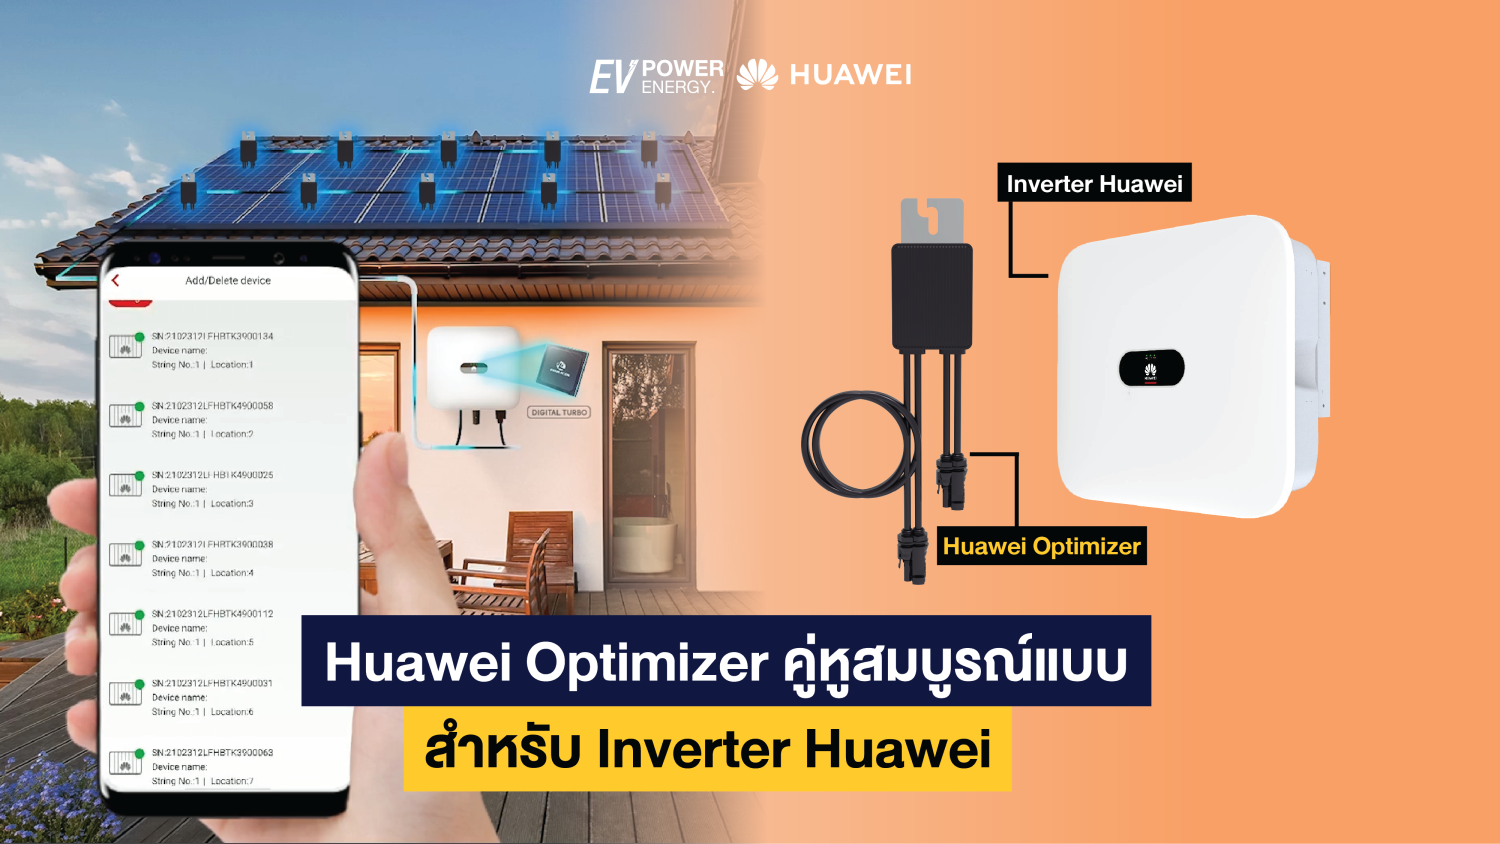 Huawei Optimizer คู่หูสมบูรณ์แบบ สำหรับ Inverter Huawei-02-02 2